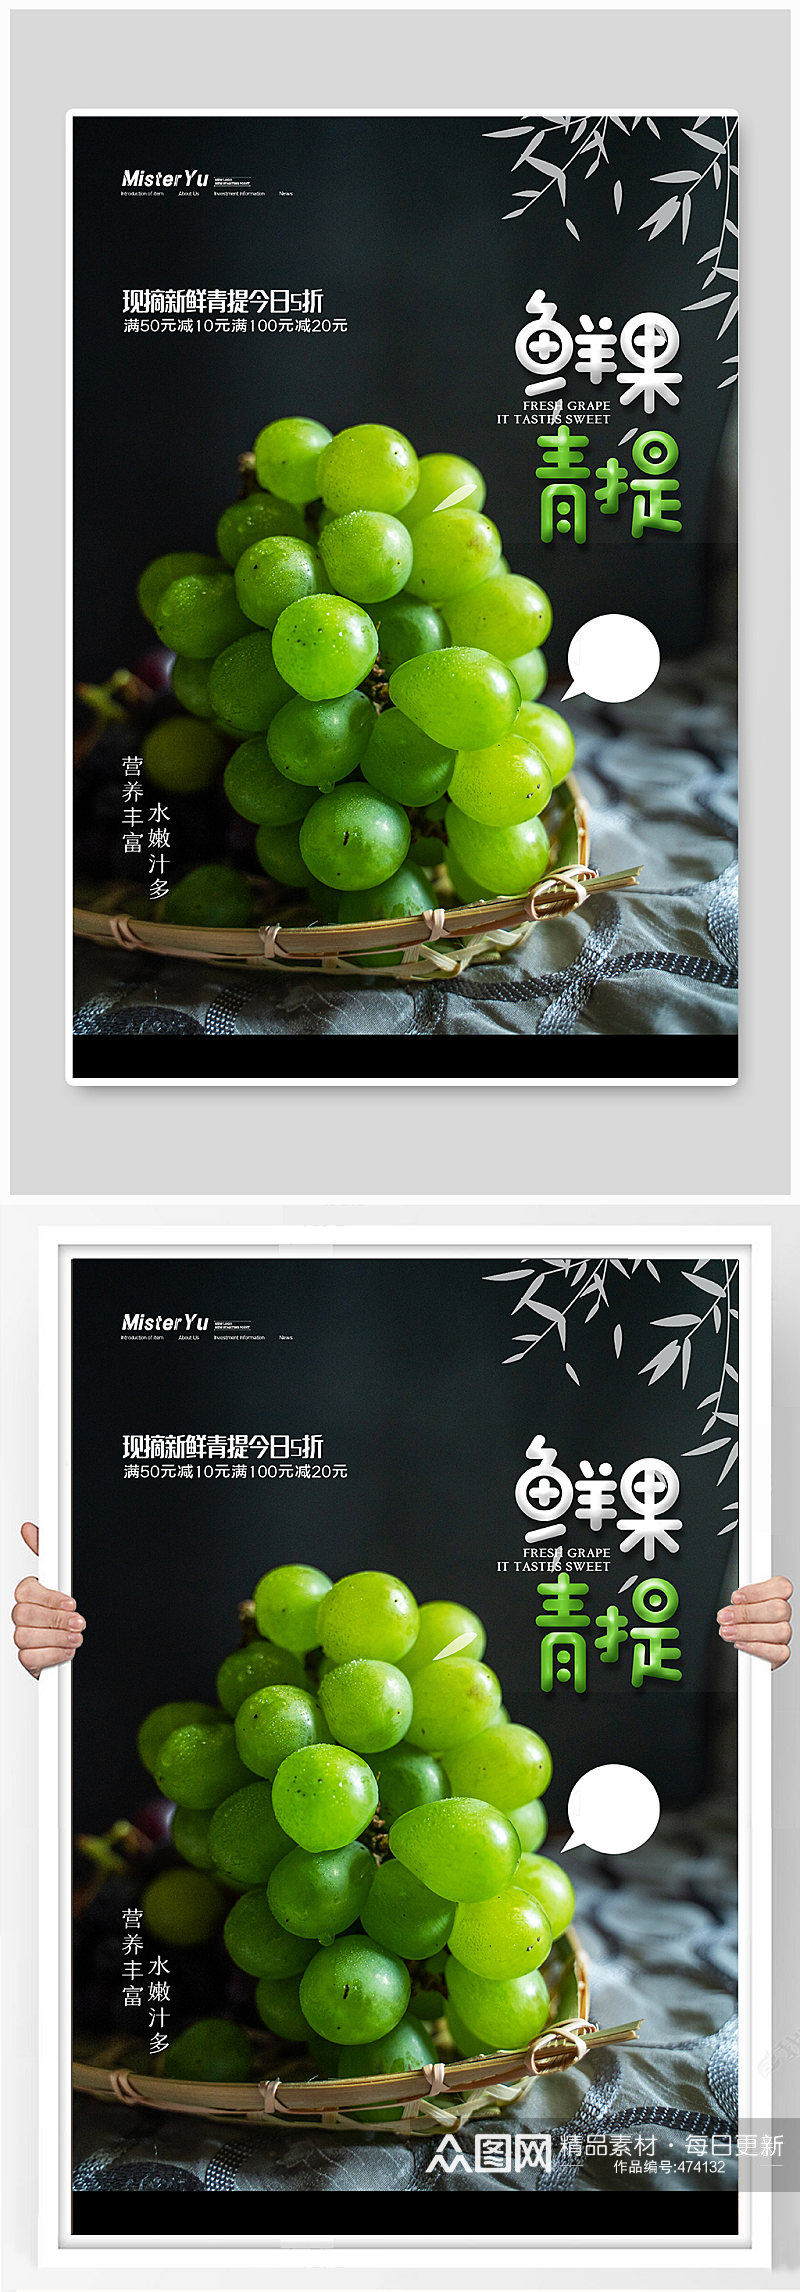 鲜果青提葡萄水果宣传海报素材